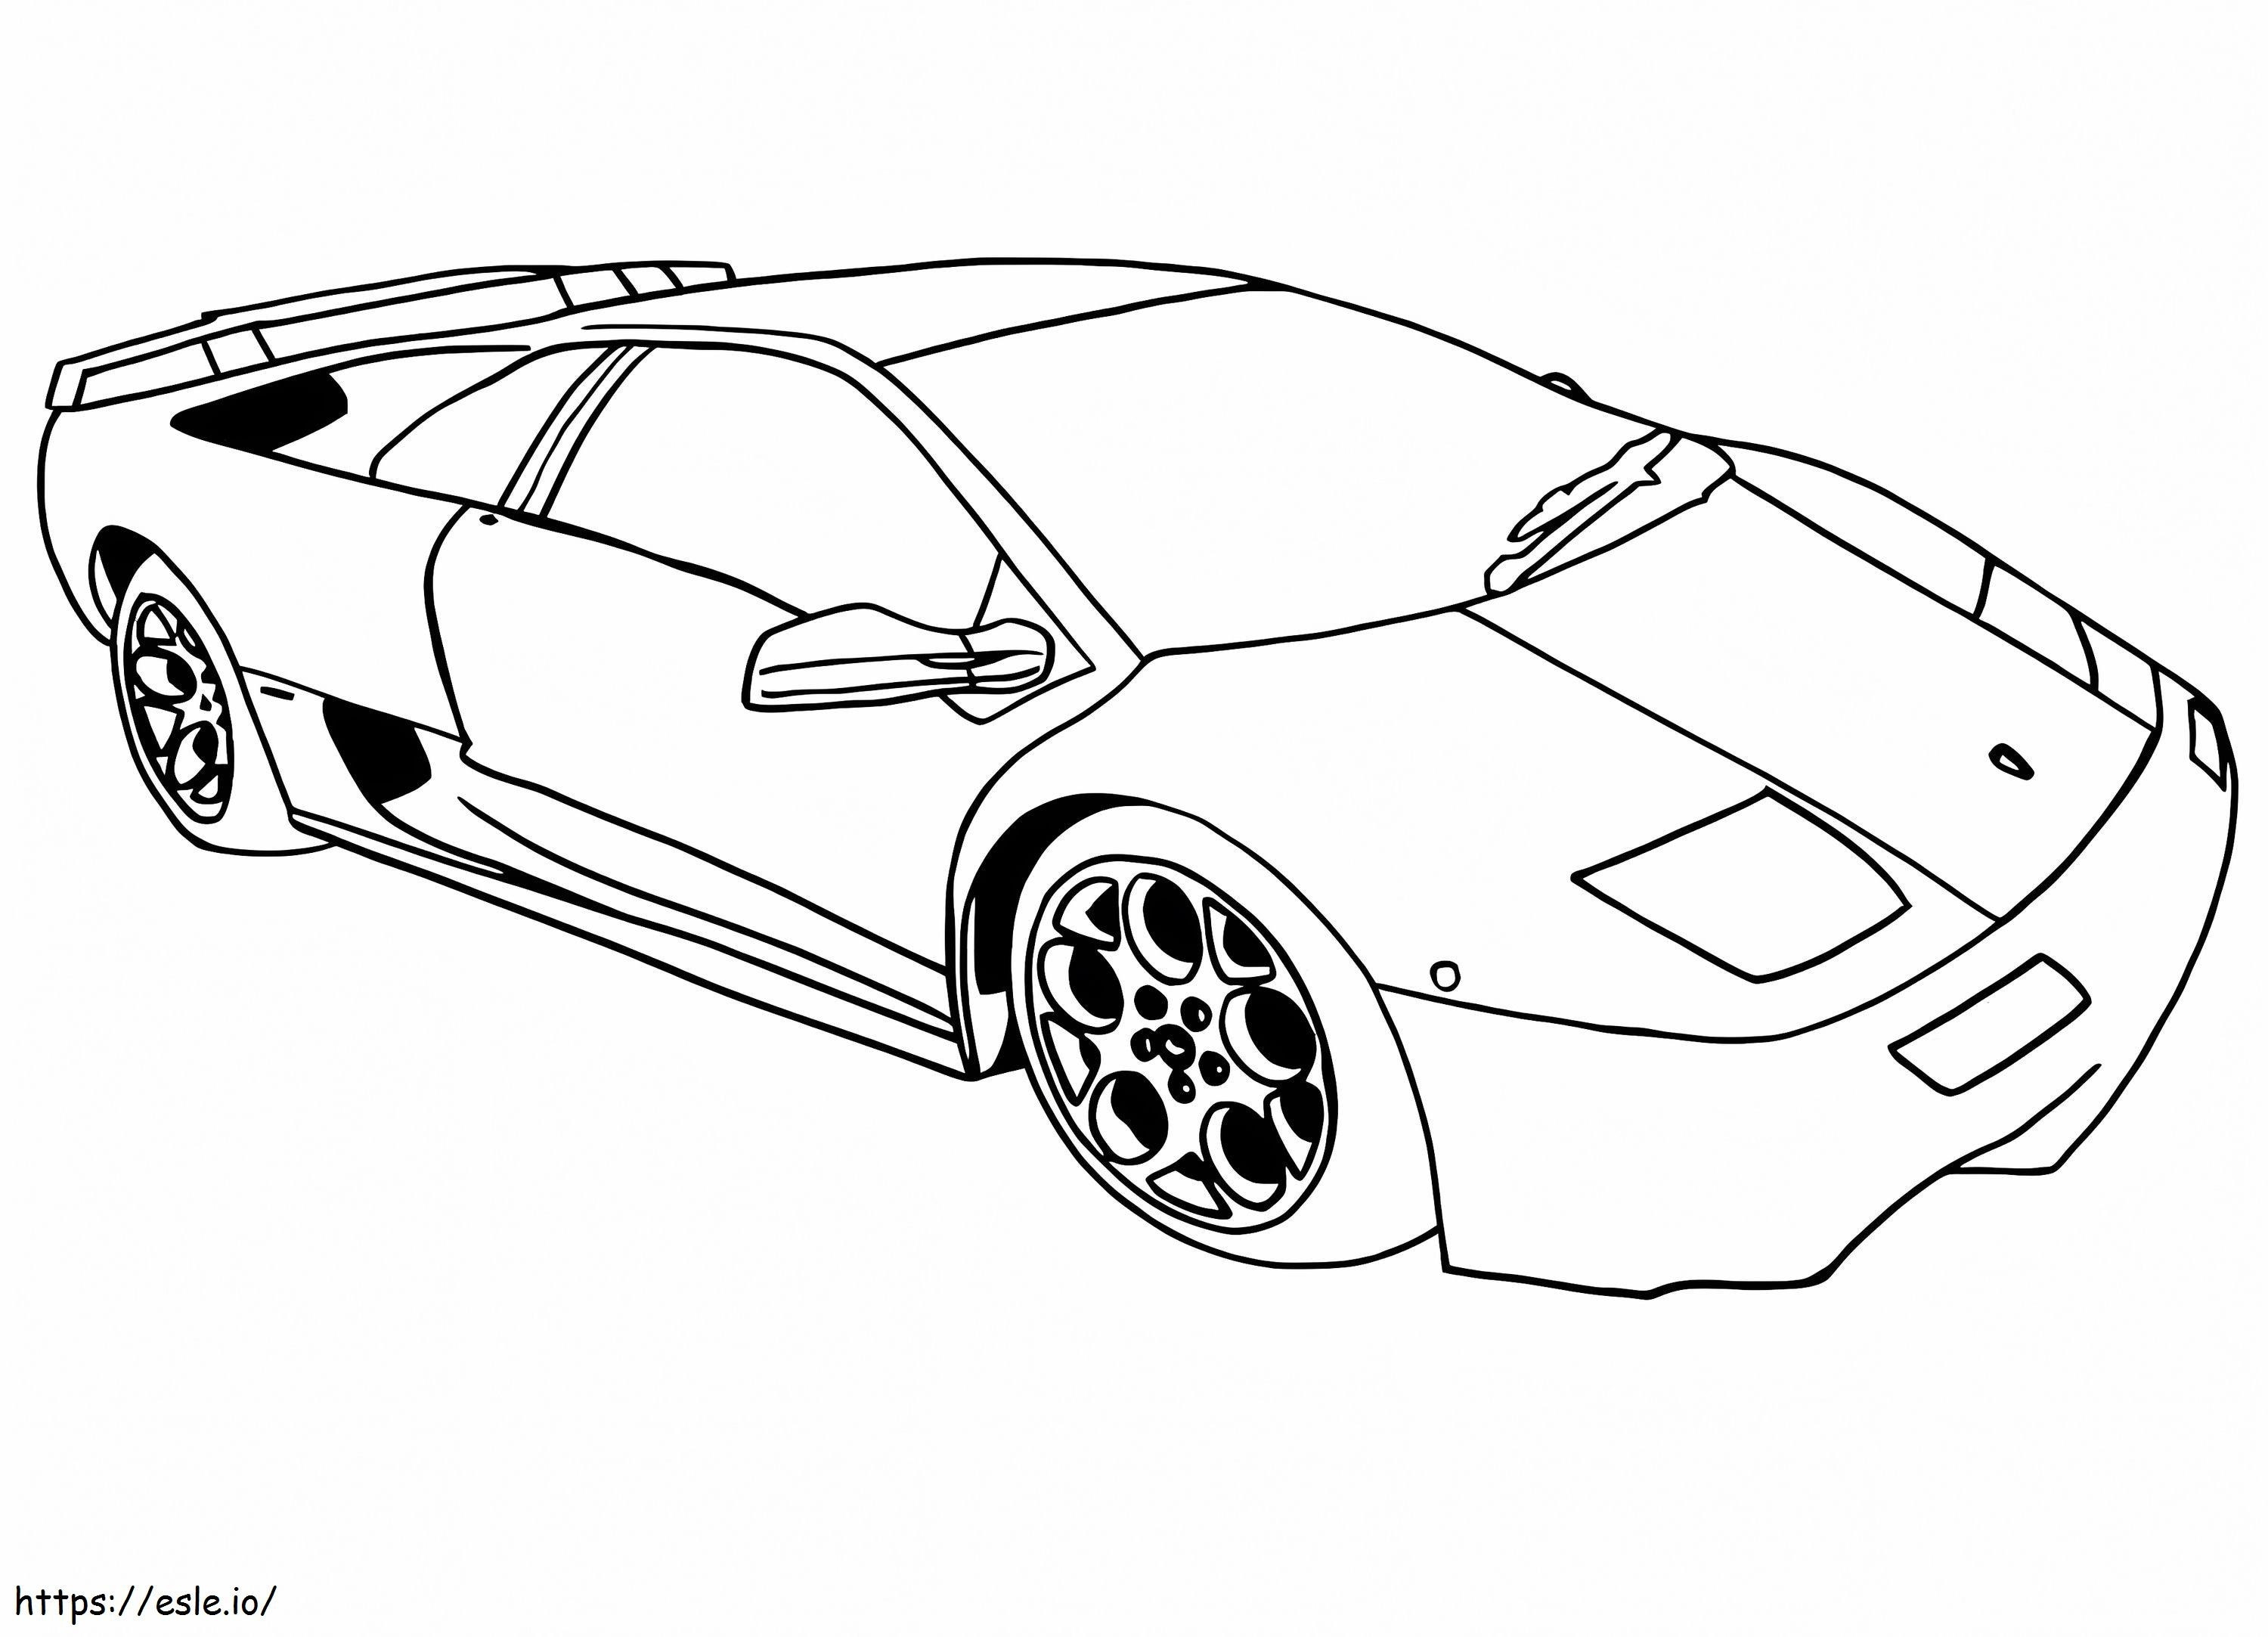 Lamborghini11 kleurplaat kleurplaat